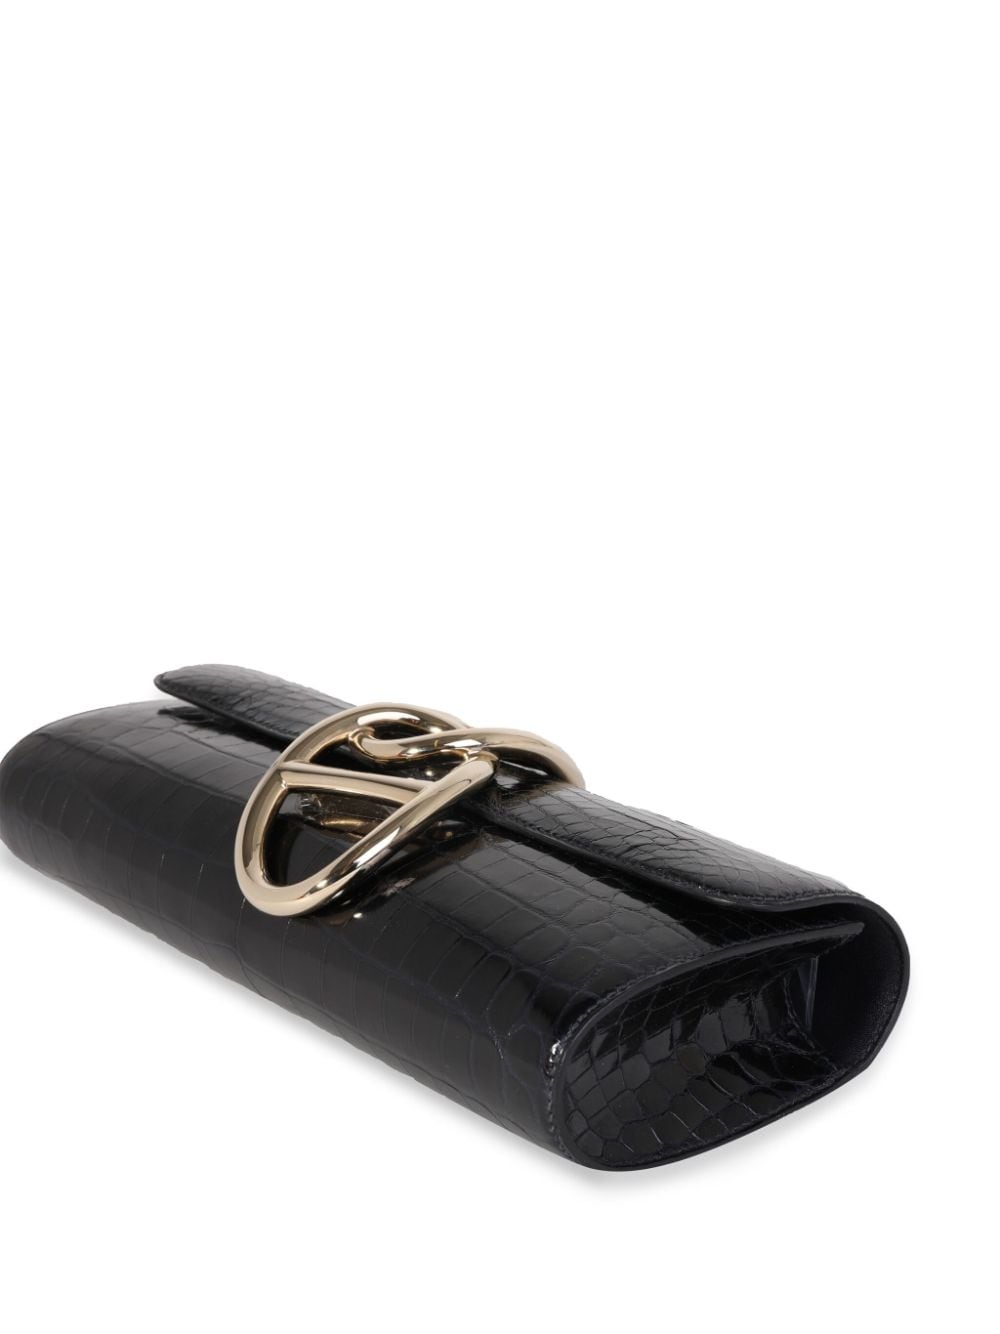 Past auction: Black alligator Hermes clutch purse